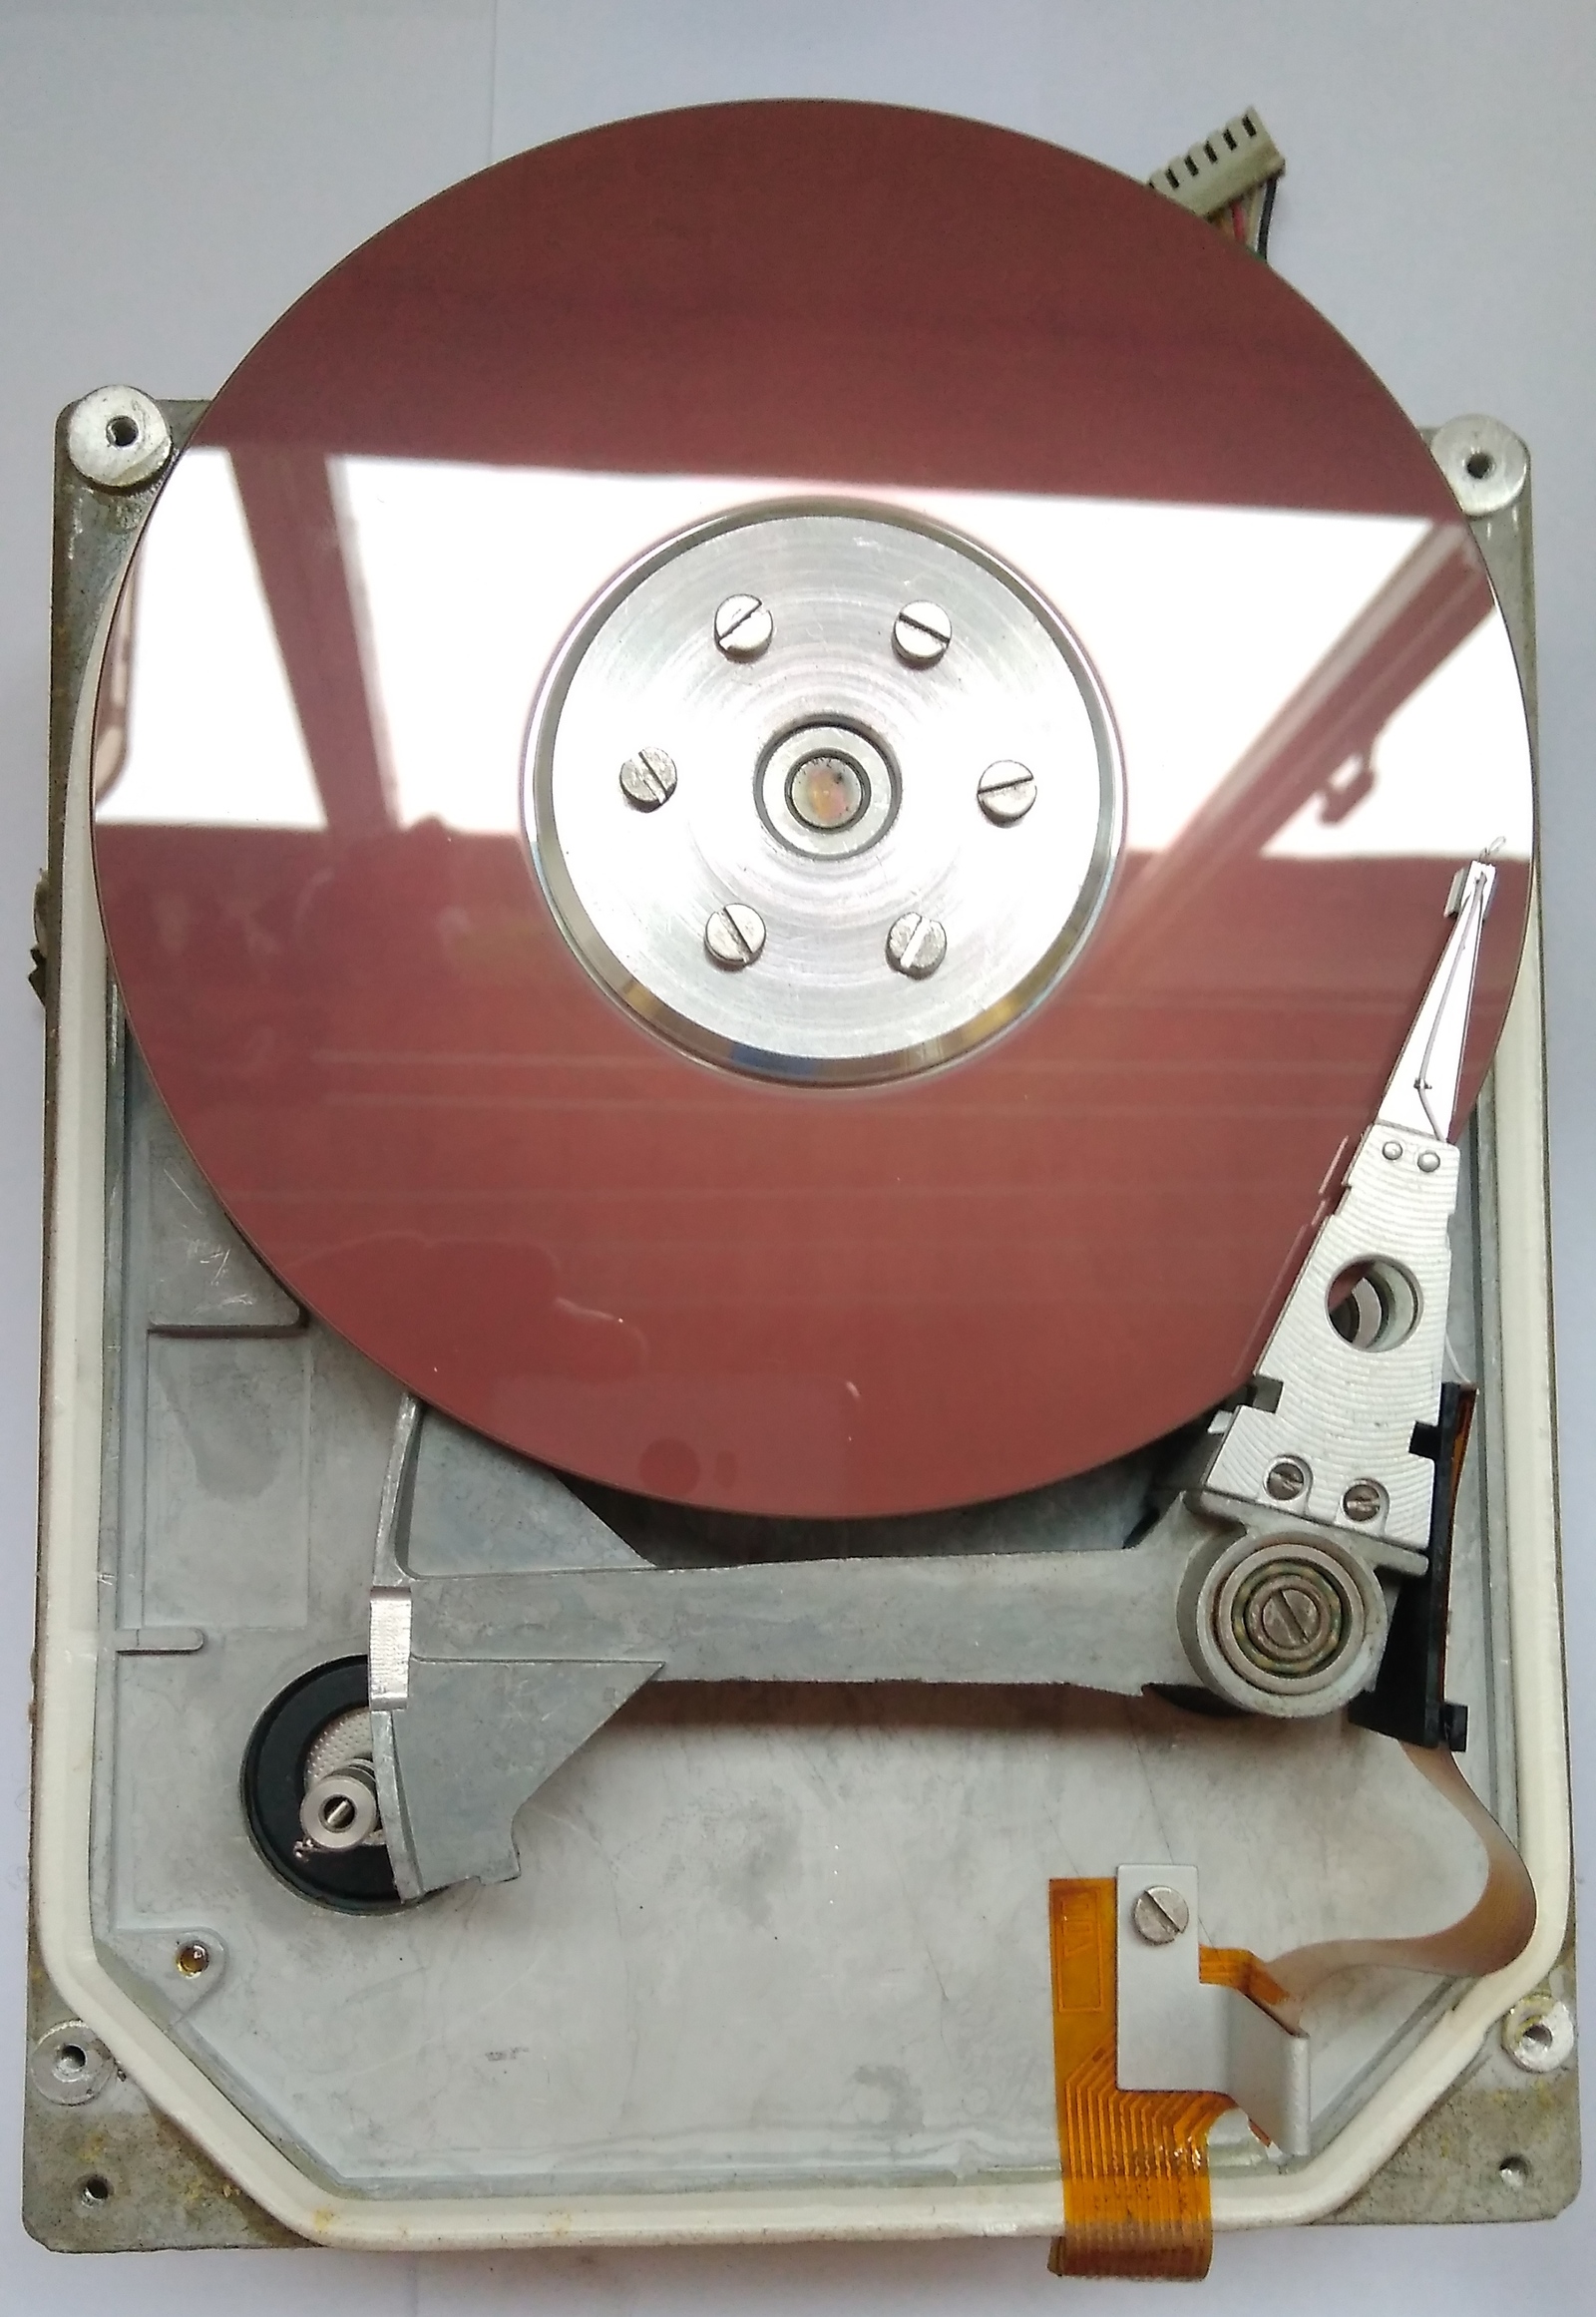 Диск мс. Жесткий диск мс5405. Советский жесткий диск МС 5405. St-506 жесткий диск. Mfm жёсткий диск мс5405.